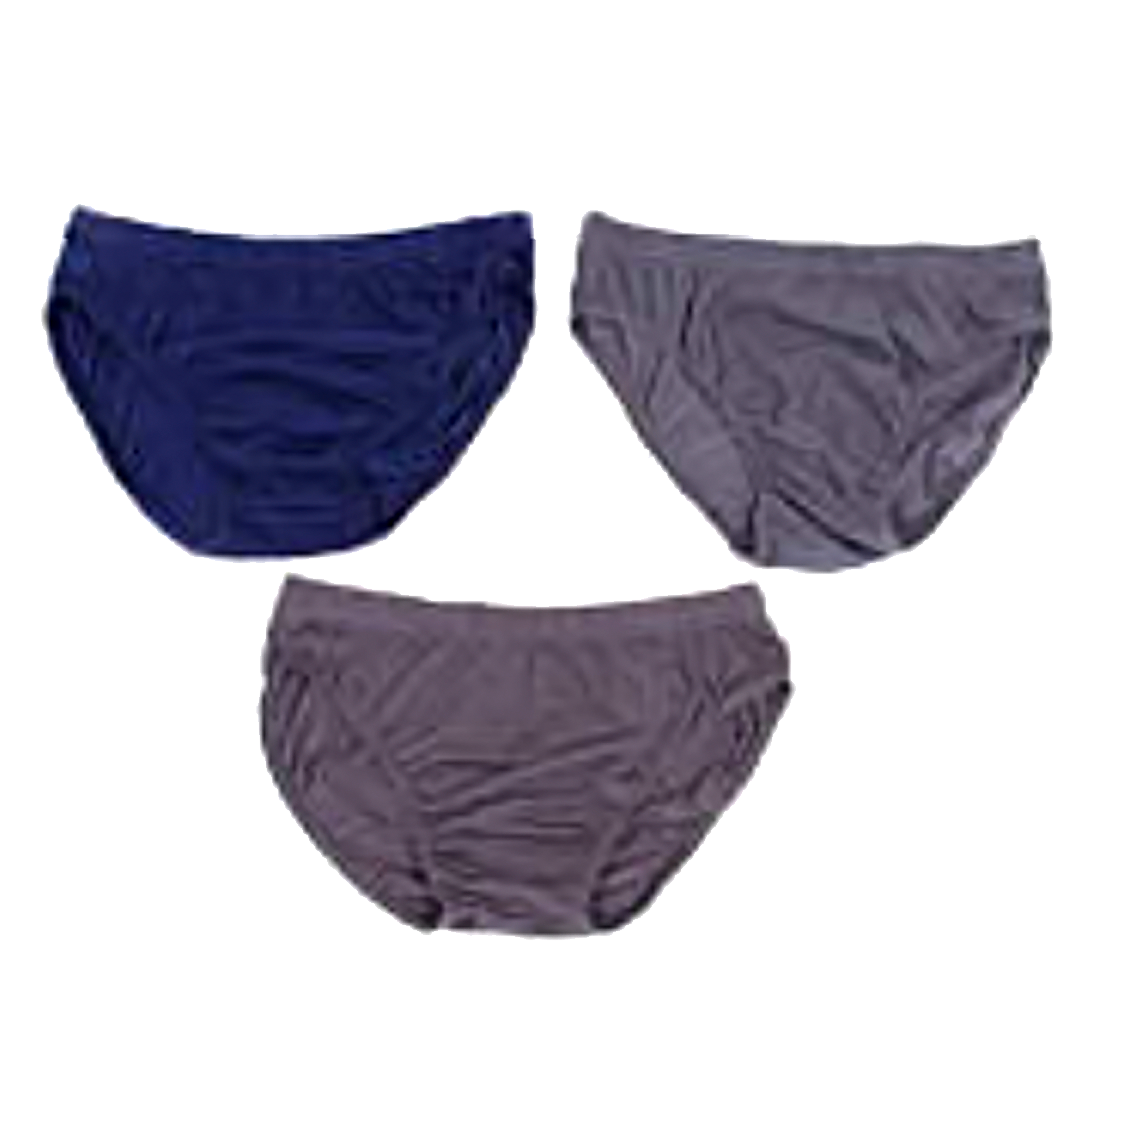 Wholesale Men's Clothing Apparel Assorted Underwear S,M,L,XL,XXL Shelton NQ18